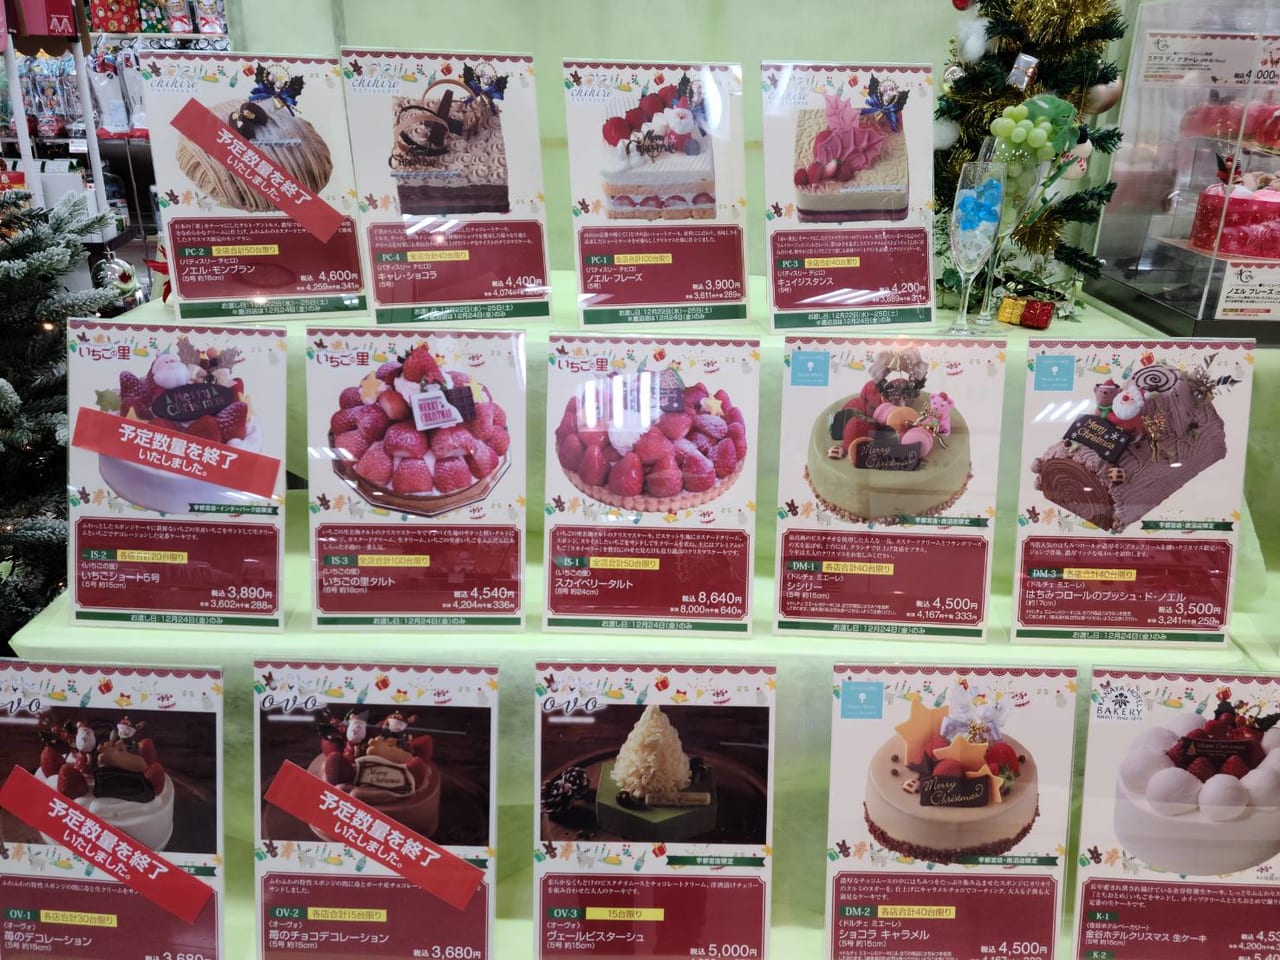 宇都宮市 クリスマスの準備はおすみですか Fkdショッピングプラザ宇都宮店では ケーキはもちろんオードブルやメインも揃っちゃいますよ ケーキの締め切りは12 16 木 号外net 宇都宮市